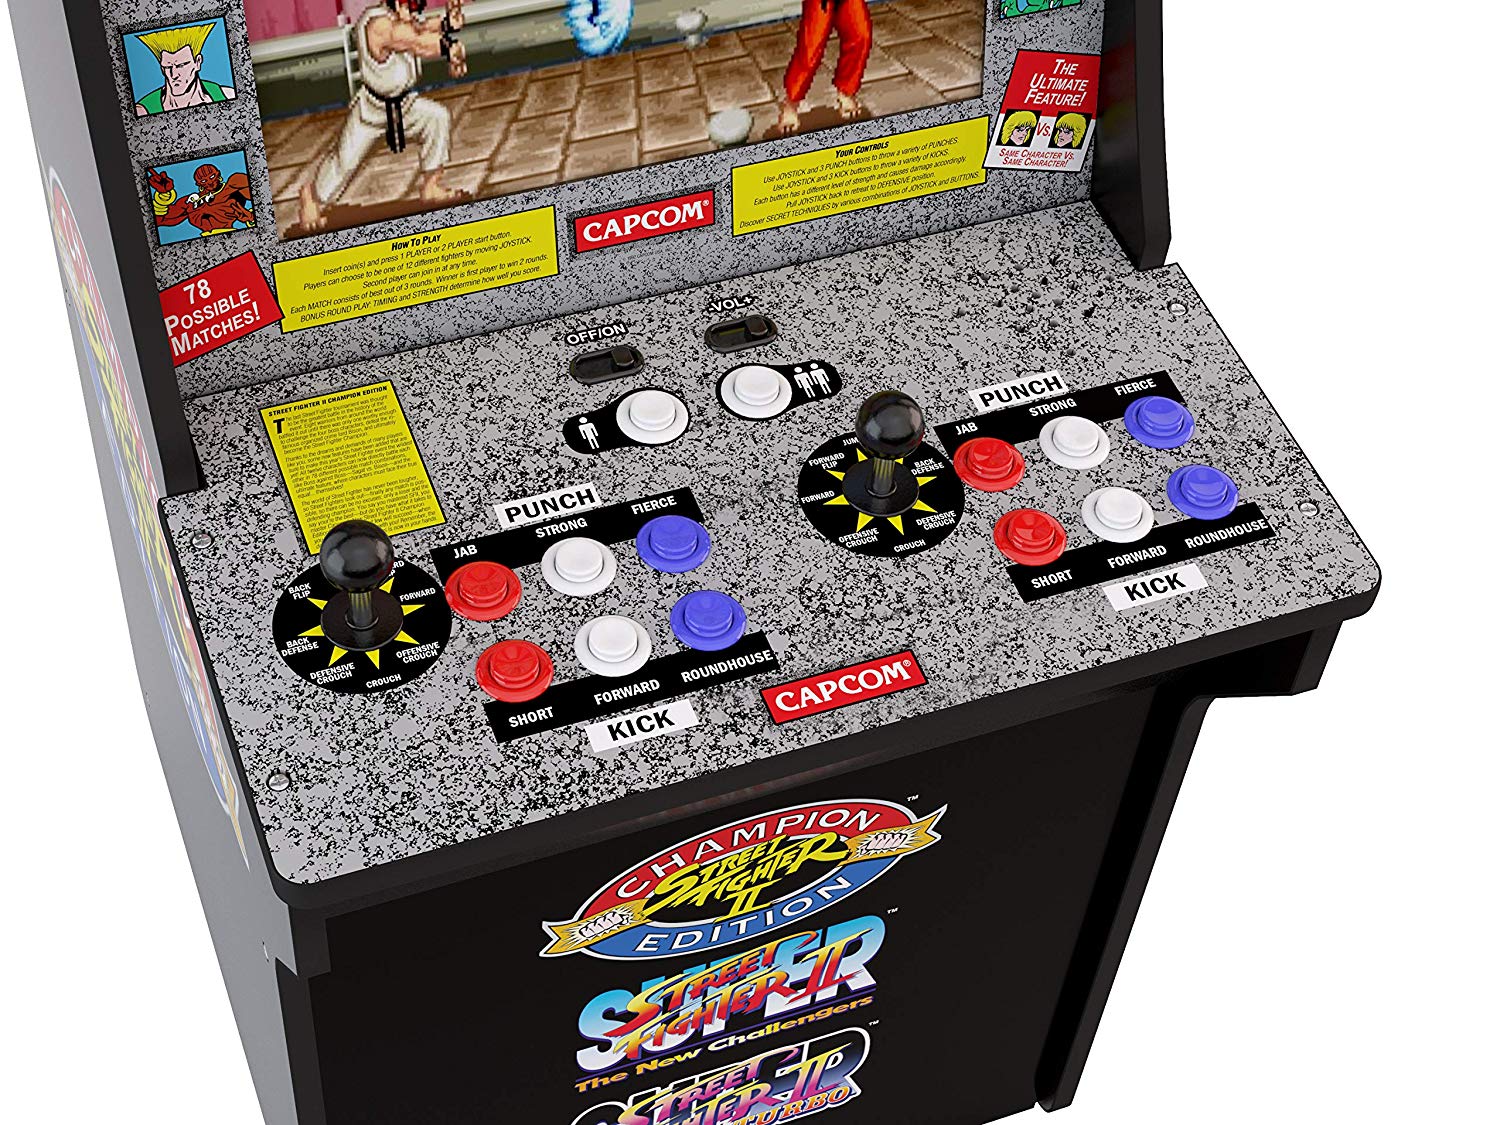 street fighter 2 arcade machine